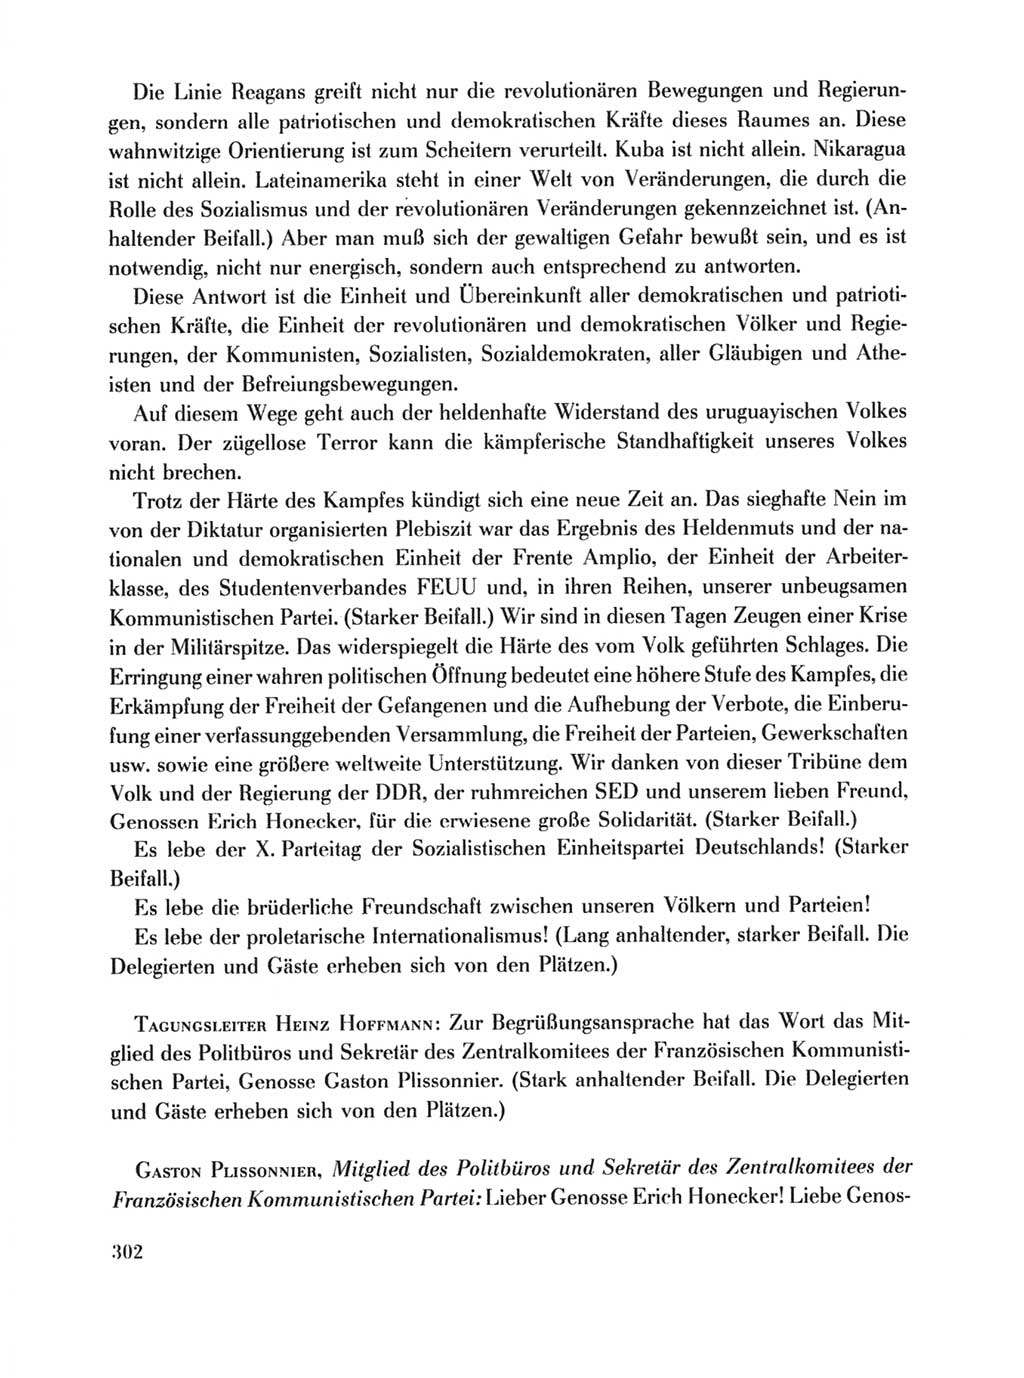 Protokoll der Verhandlungen des Ⅹ. Parteitages der Sozialistischen Einheitspartei Deutschlands (SED) [Deutsche Demokratische Republik (DDR)] 1981, Band 1, Seite 302 (Prot. Verh. Ⅹ. PT SED DDR 1981, Bd. 1, S. 302)